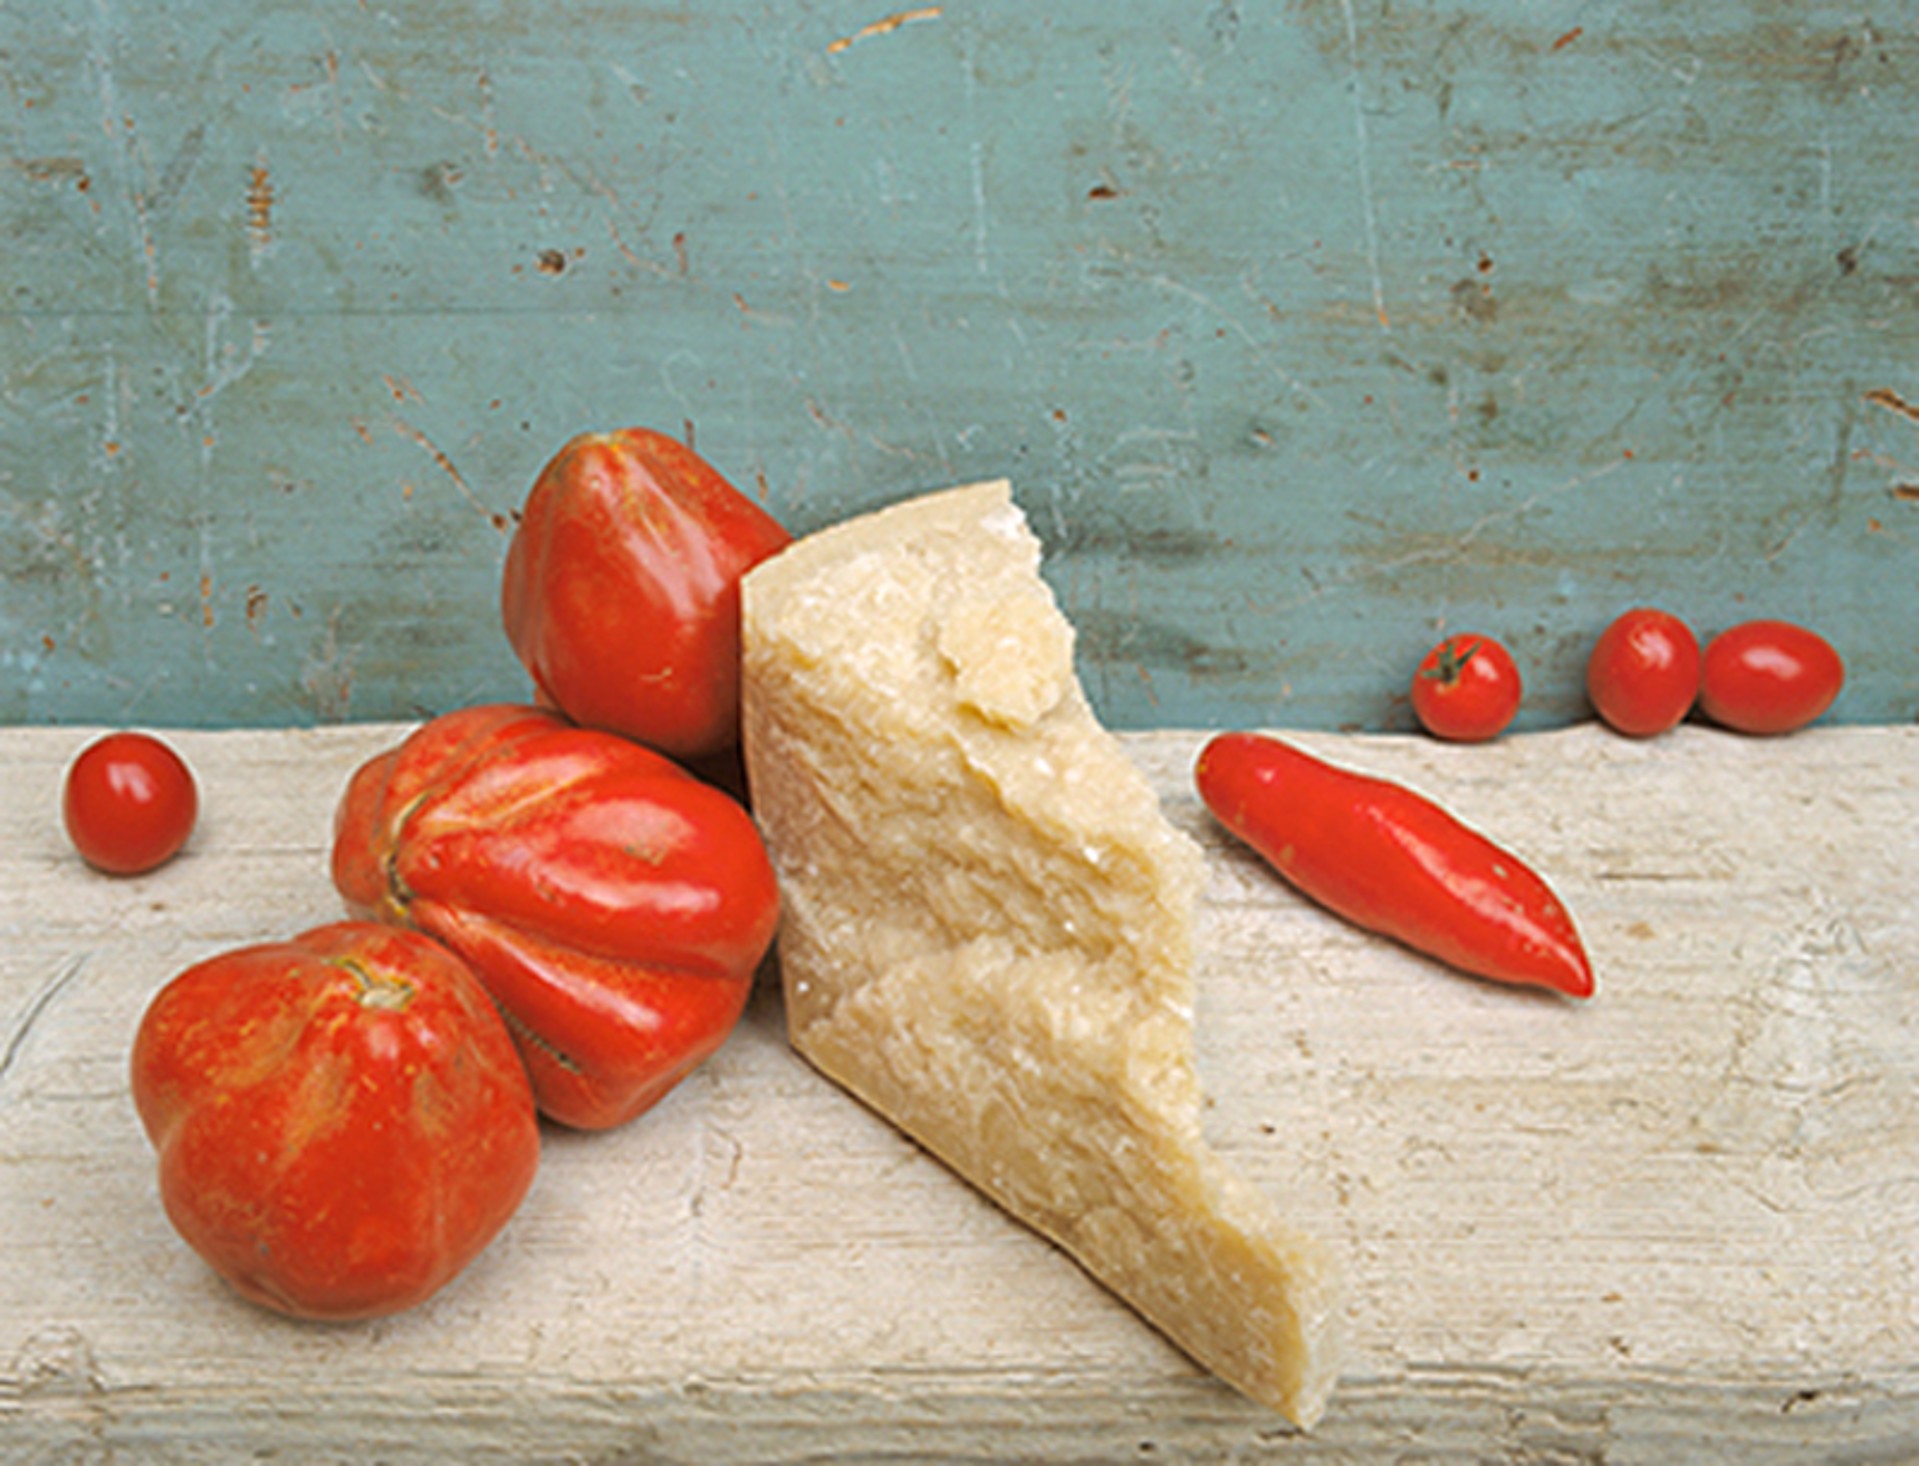 Parmesan & Tomatoes by David Halliday